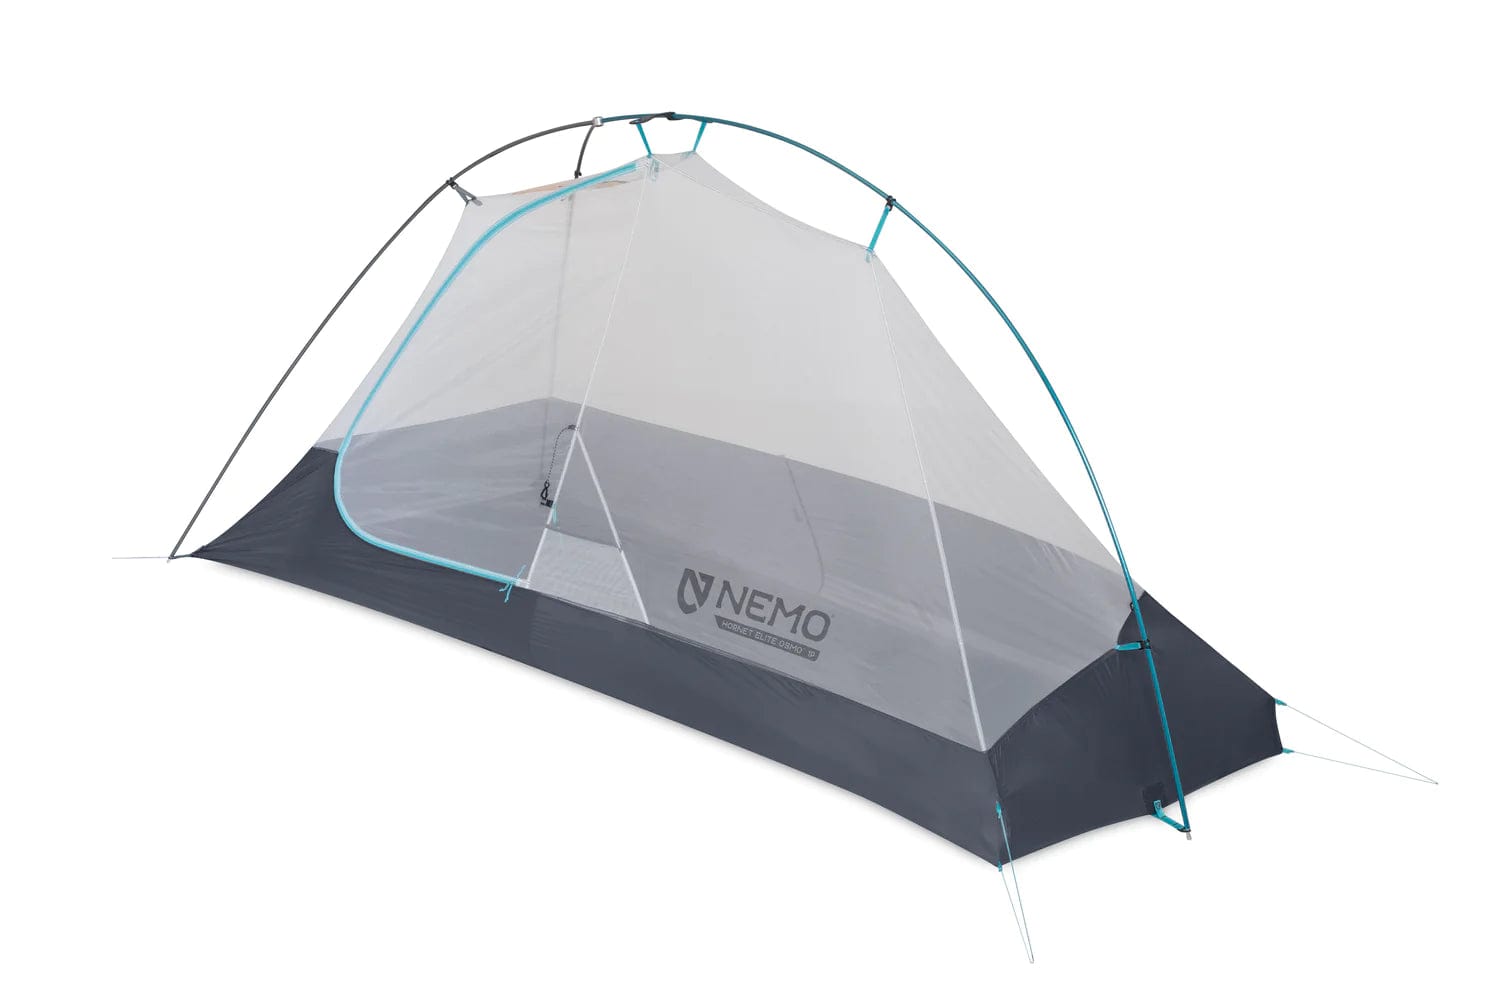 Nemo Tent 1 Person Hornet Elite OSMO Ultralight Backpacking Tent NEM003191P